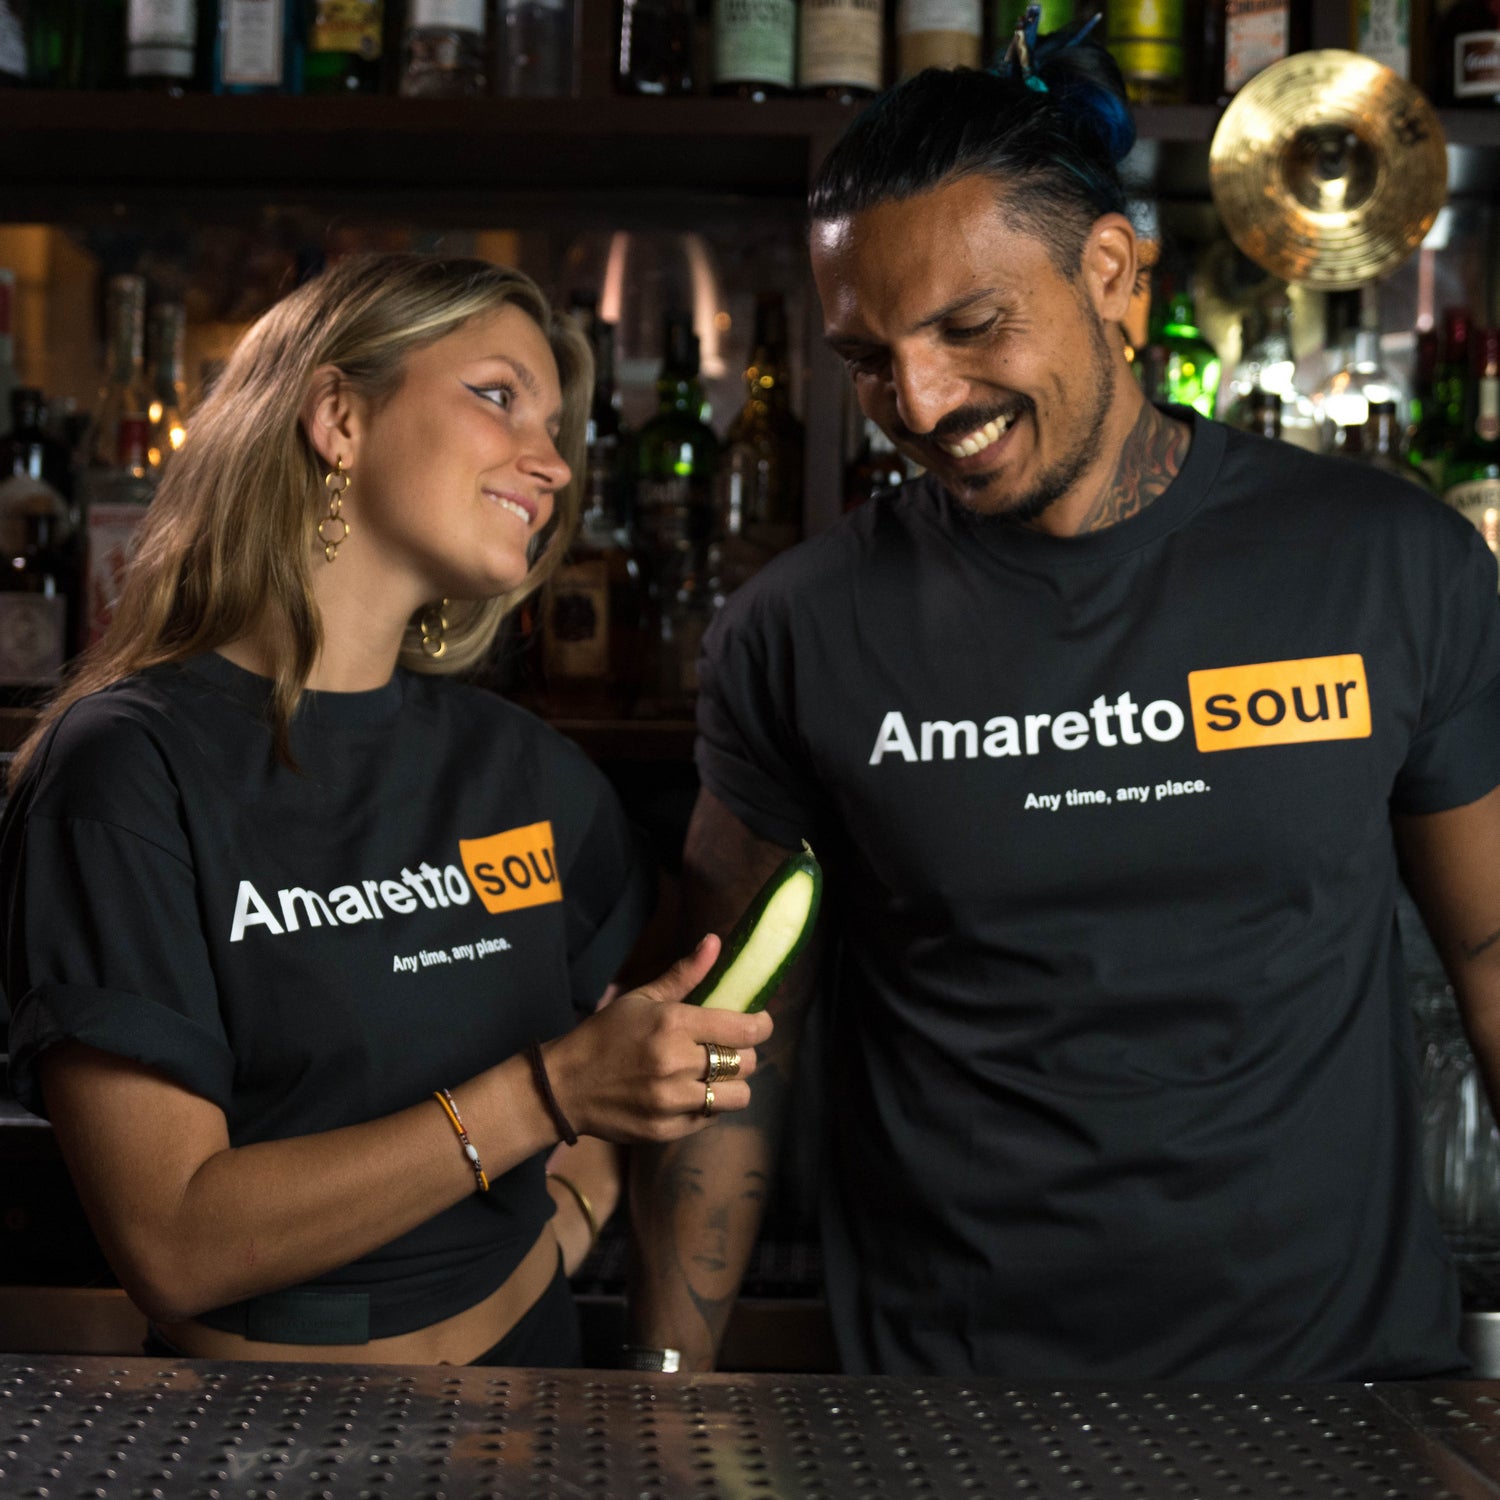 Amaretto Sour T-Shirt by Broken Bartender